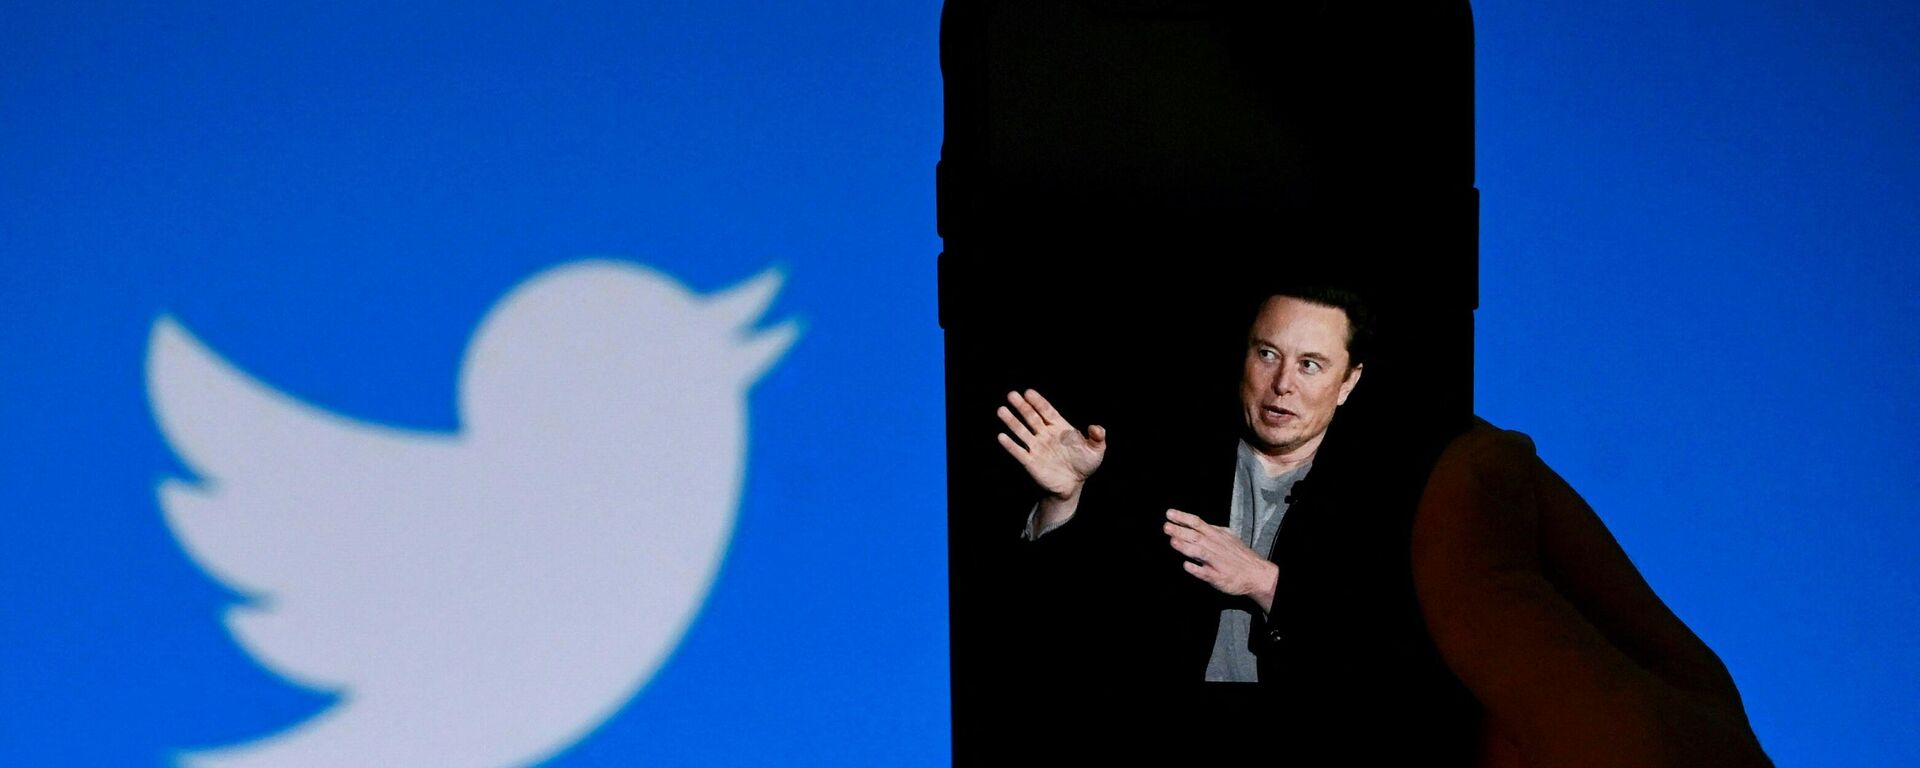 El magnate Elon Musk concretó en estos días la compra de Twitter. - Sputnik Mundo, 1920, 04.12.2022